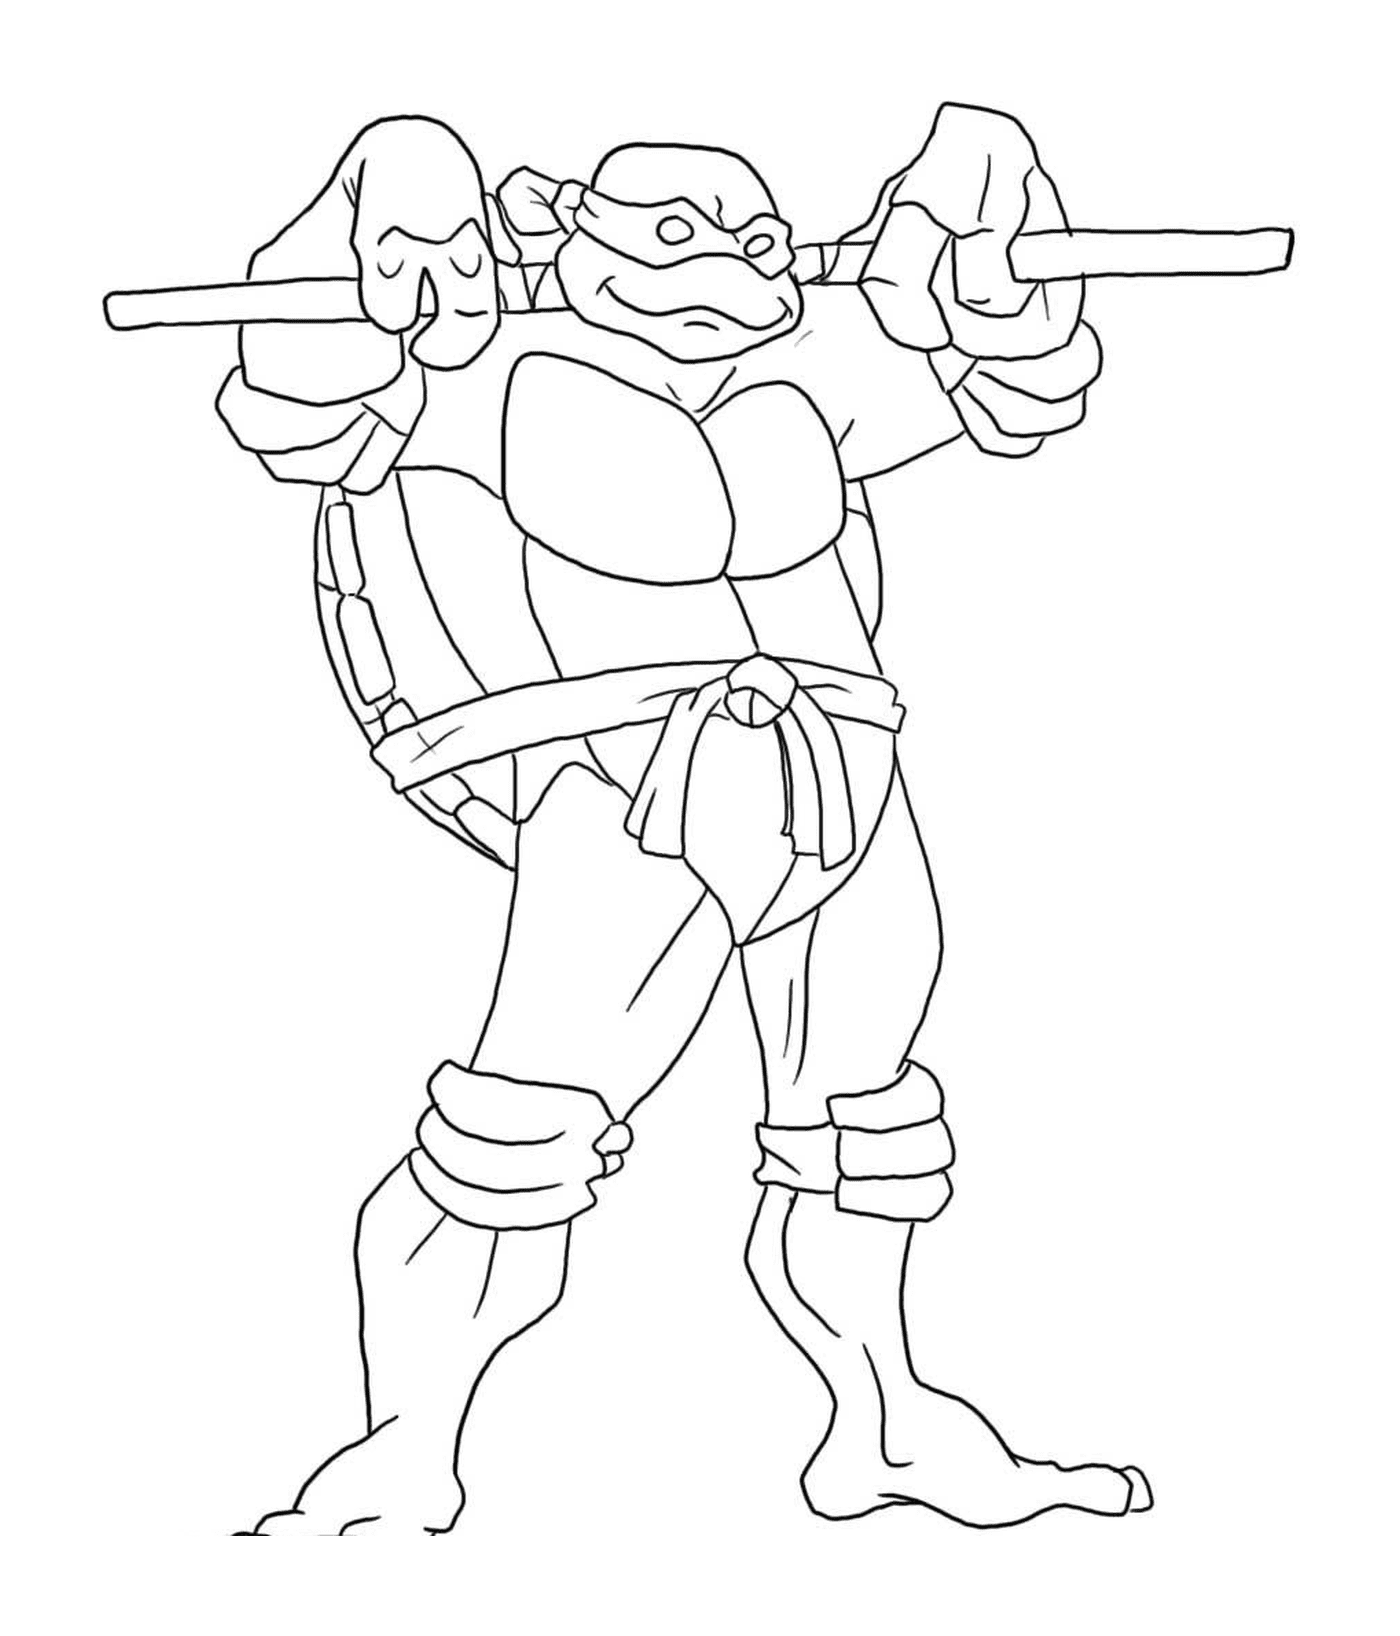  Ninja-Schildschildkröte bestimmt 